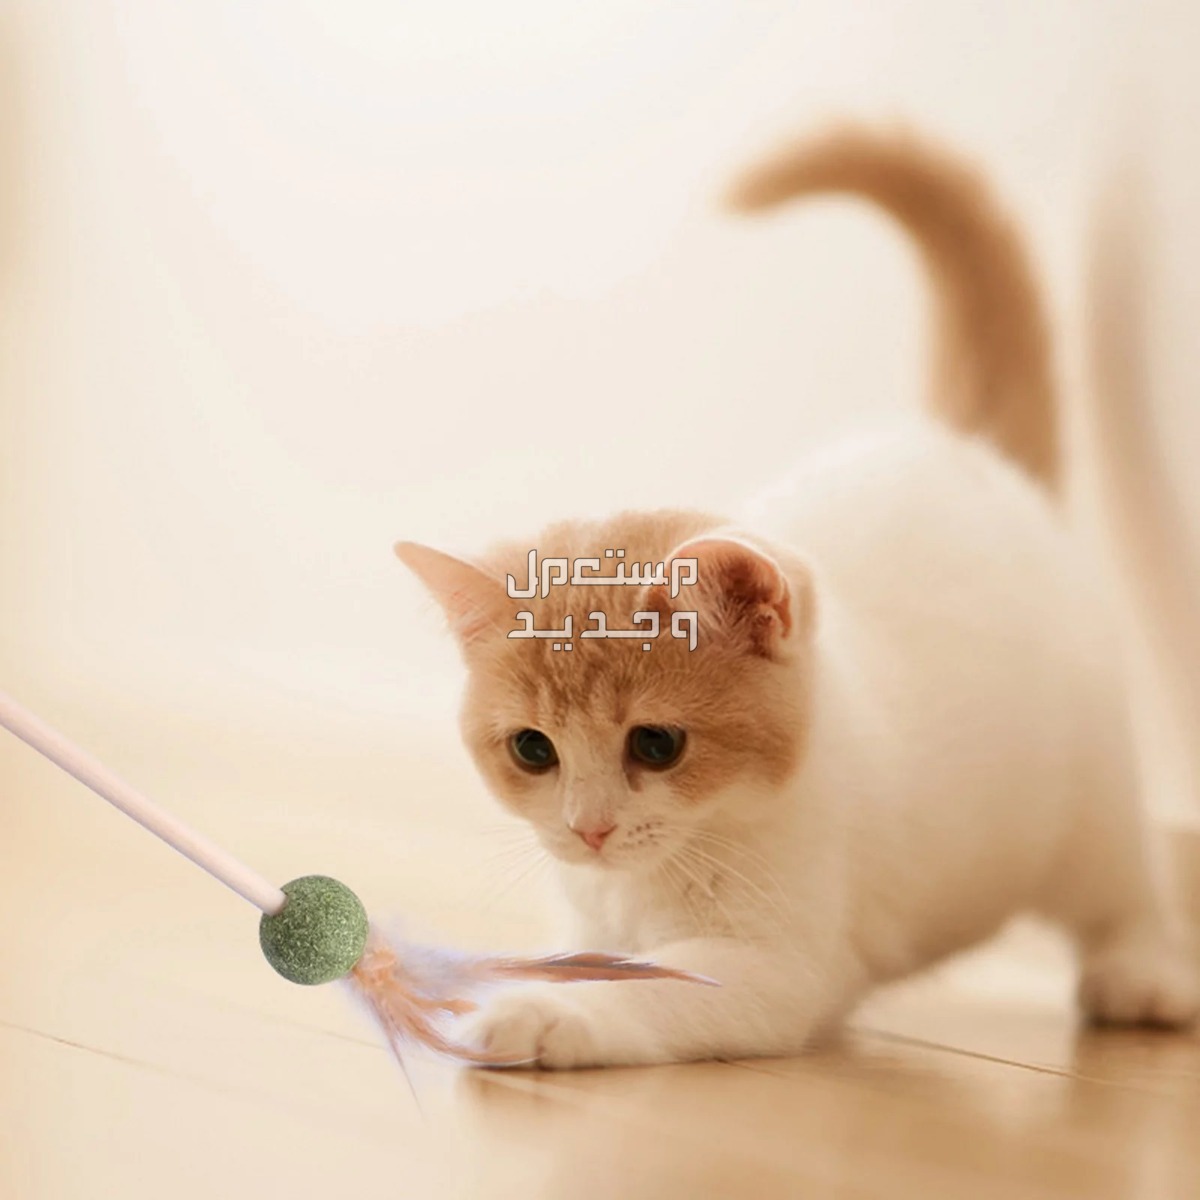 لمحبي القطط - تعرف على أفضل العاب قطط متحركة في السعودية قطة تلعب بالريشة